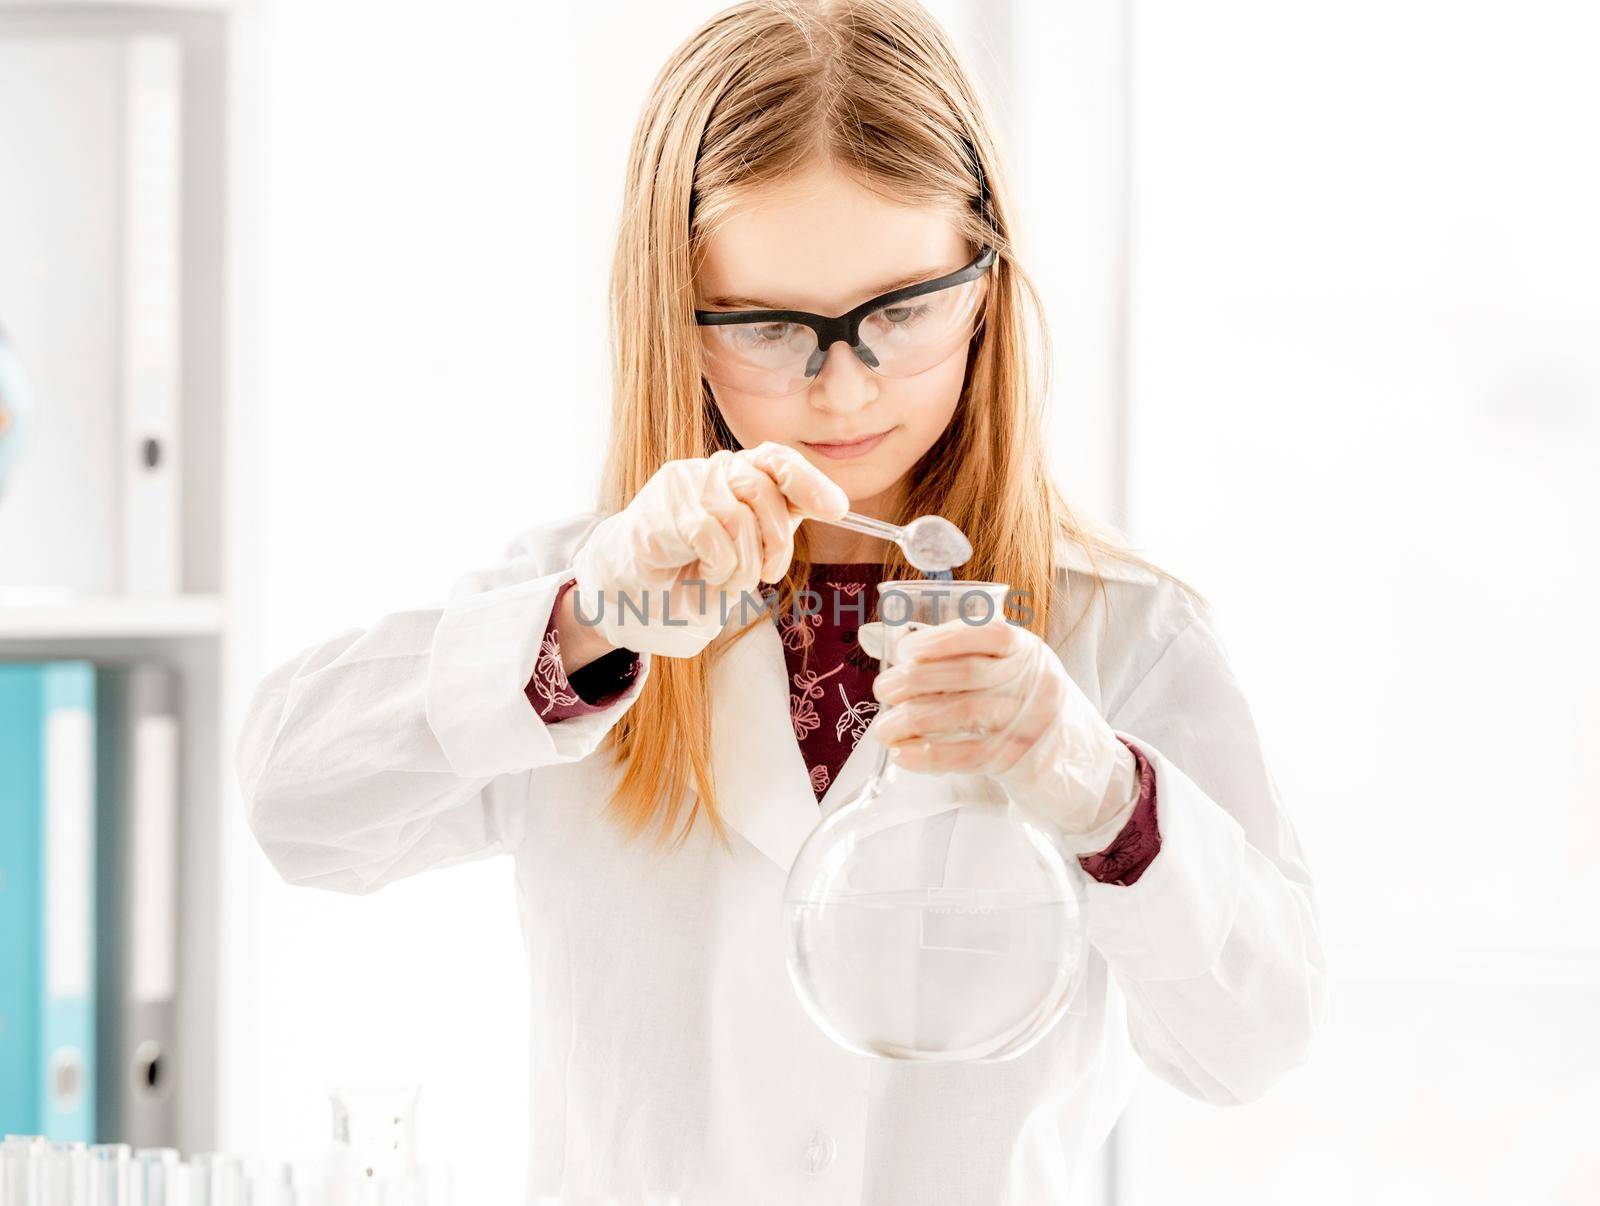 Girl on chemistry lesson by tan4ikk1